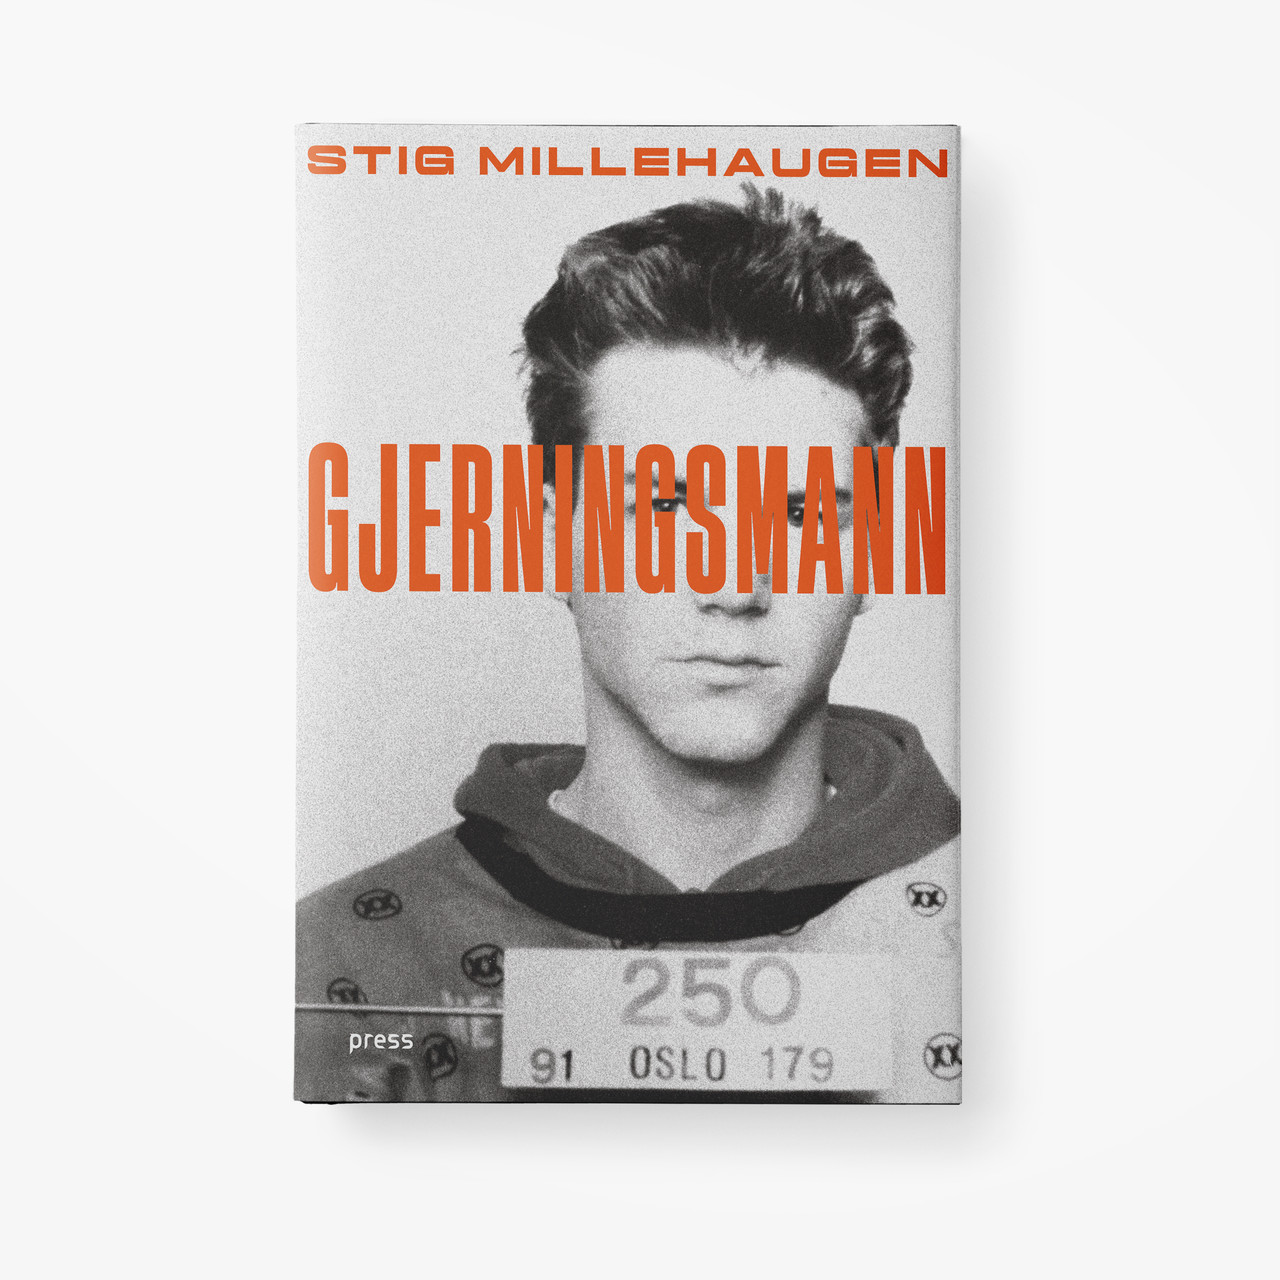 Publishing gjerningsmann 2500x2500